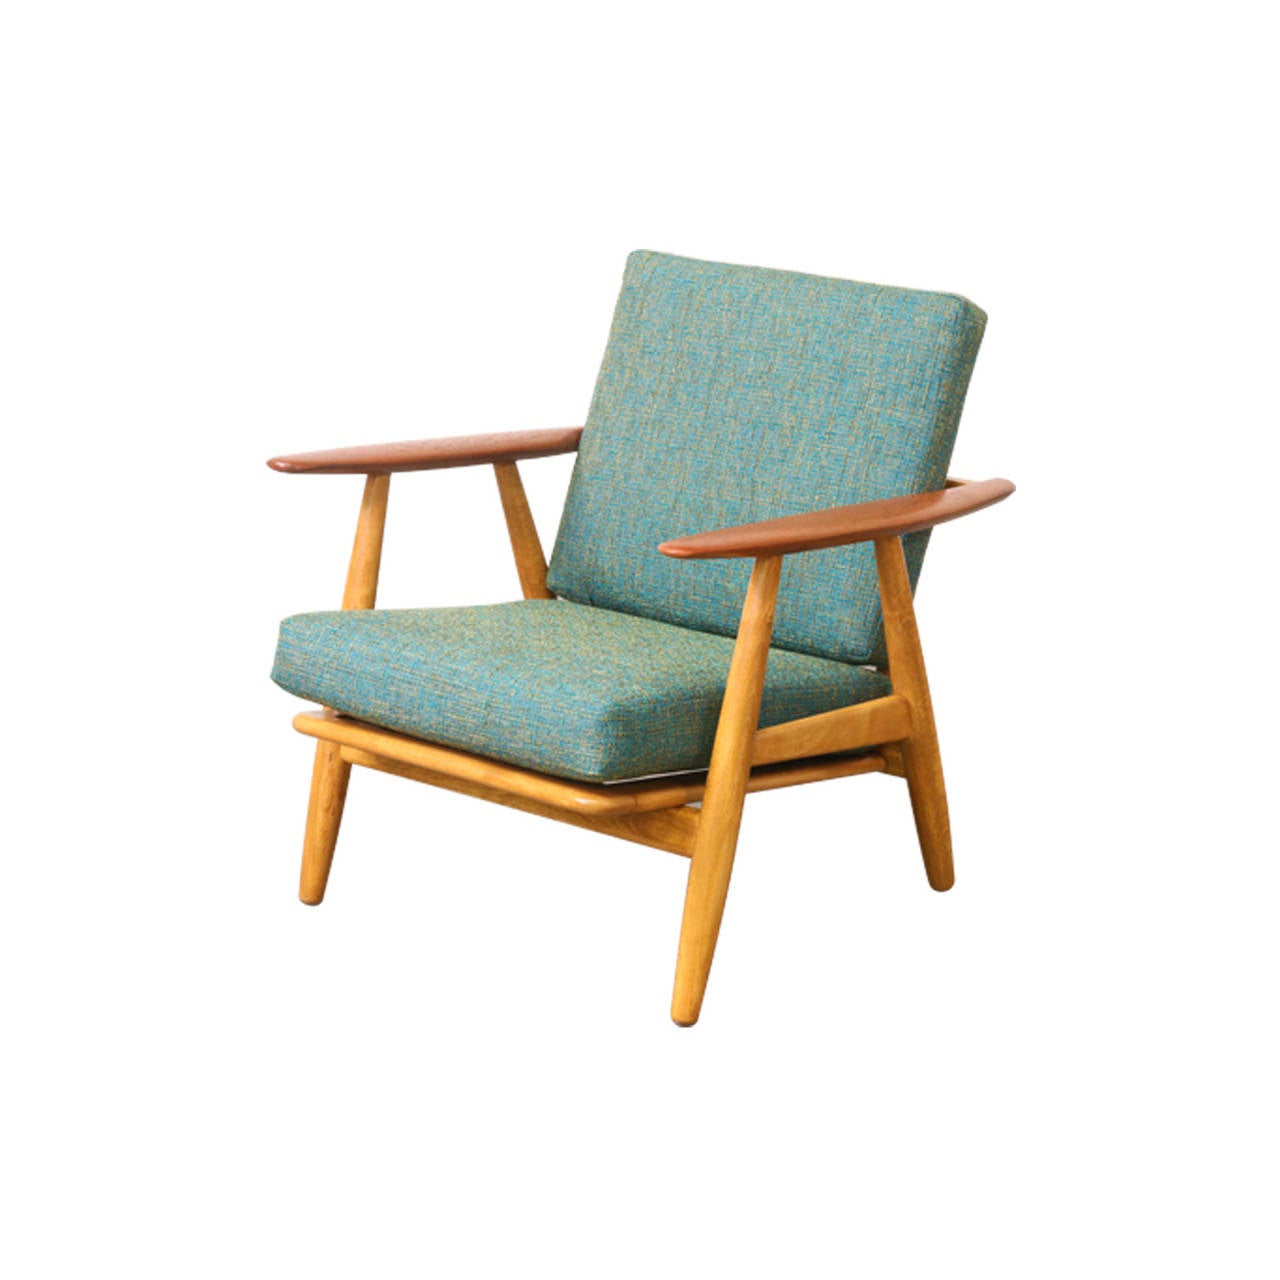 Danish Hans J. Wegner GE-240 “Cigar” Lounge Chair for Getama